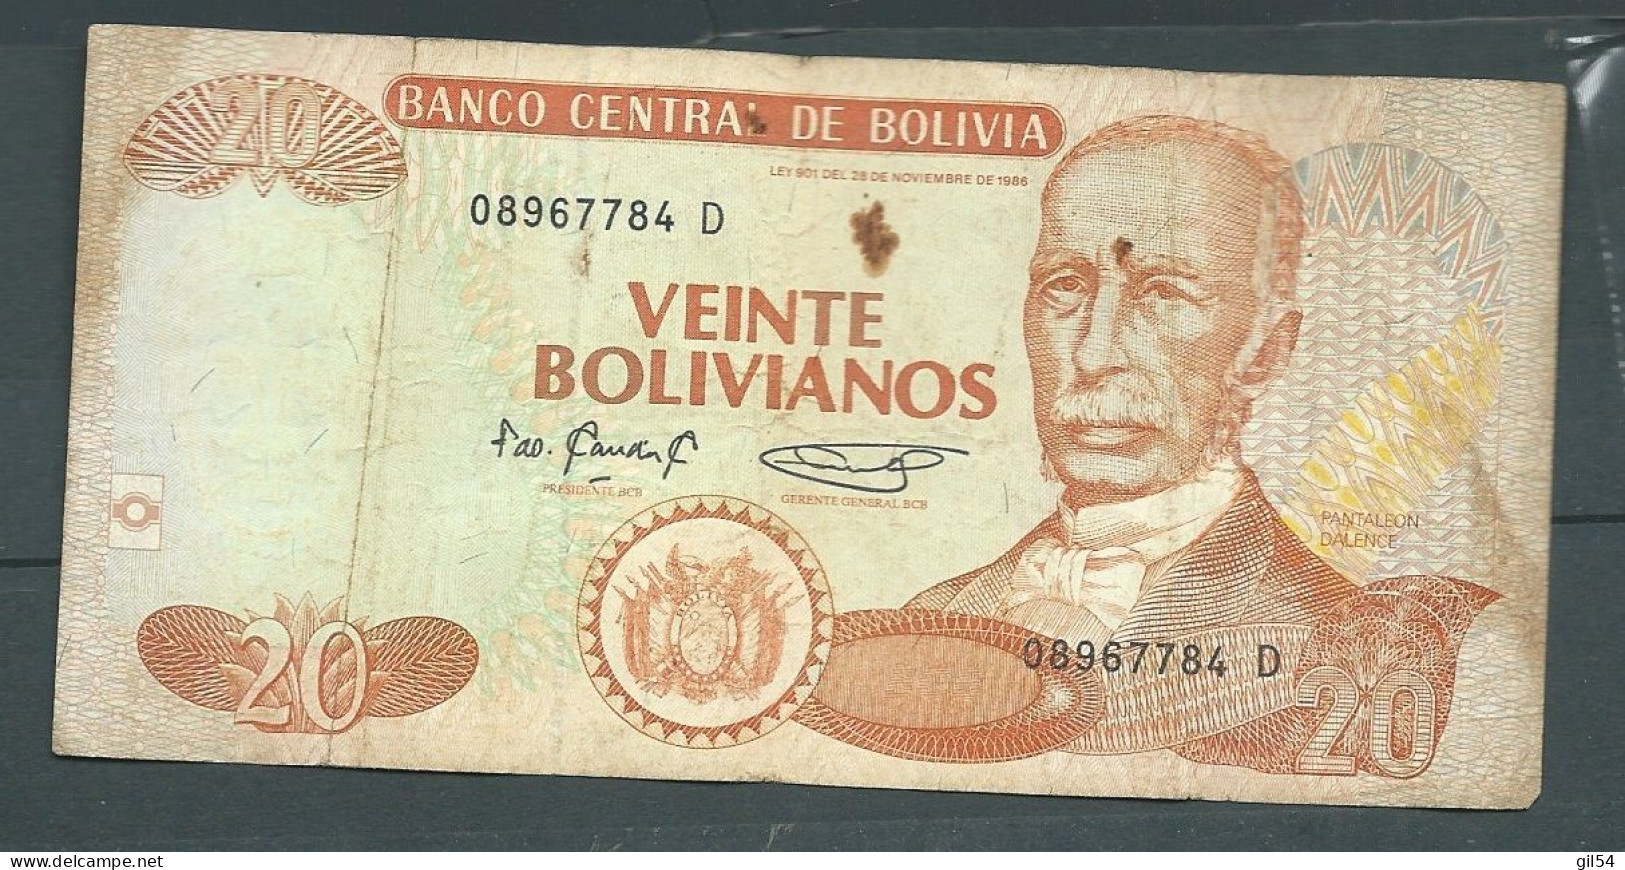 Bolivie - Bolivia 20 Bolivianos 1986  - 08967784 D - Laura 79 23 - Bolivië